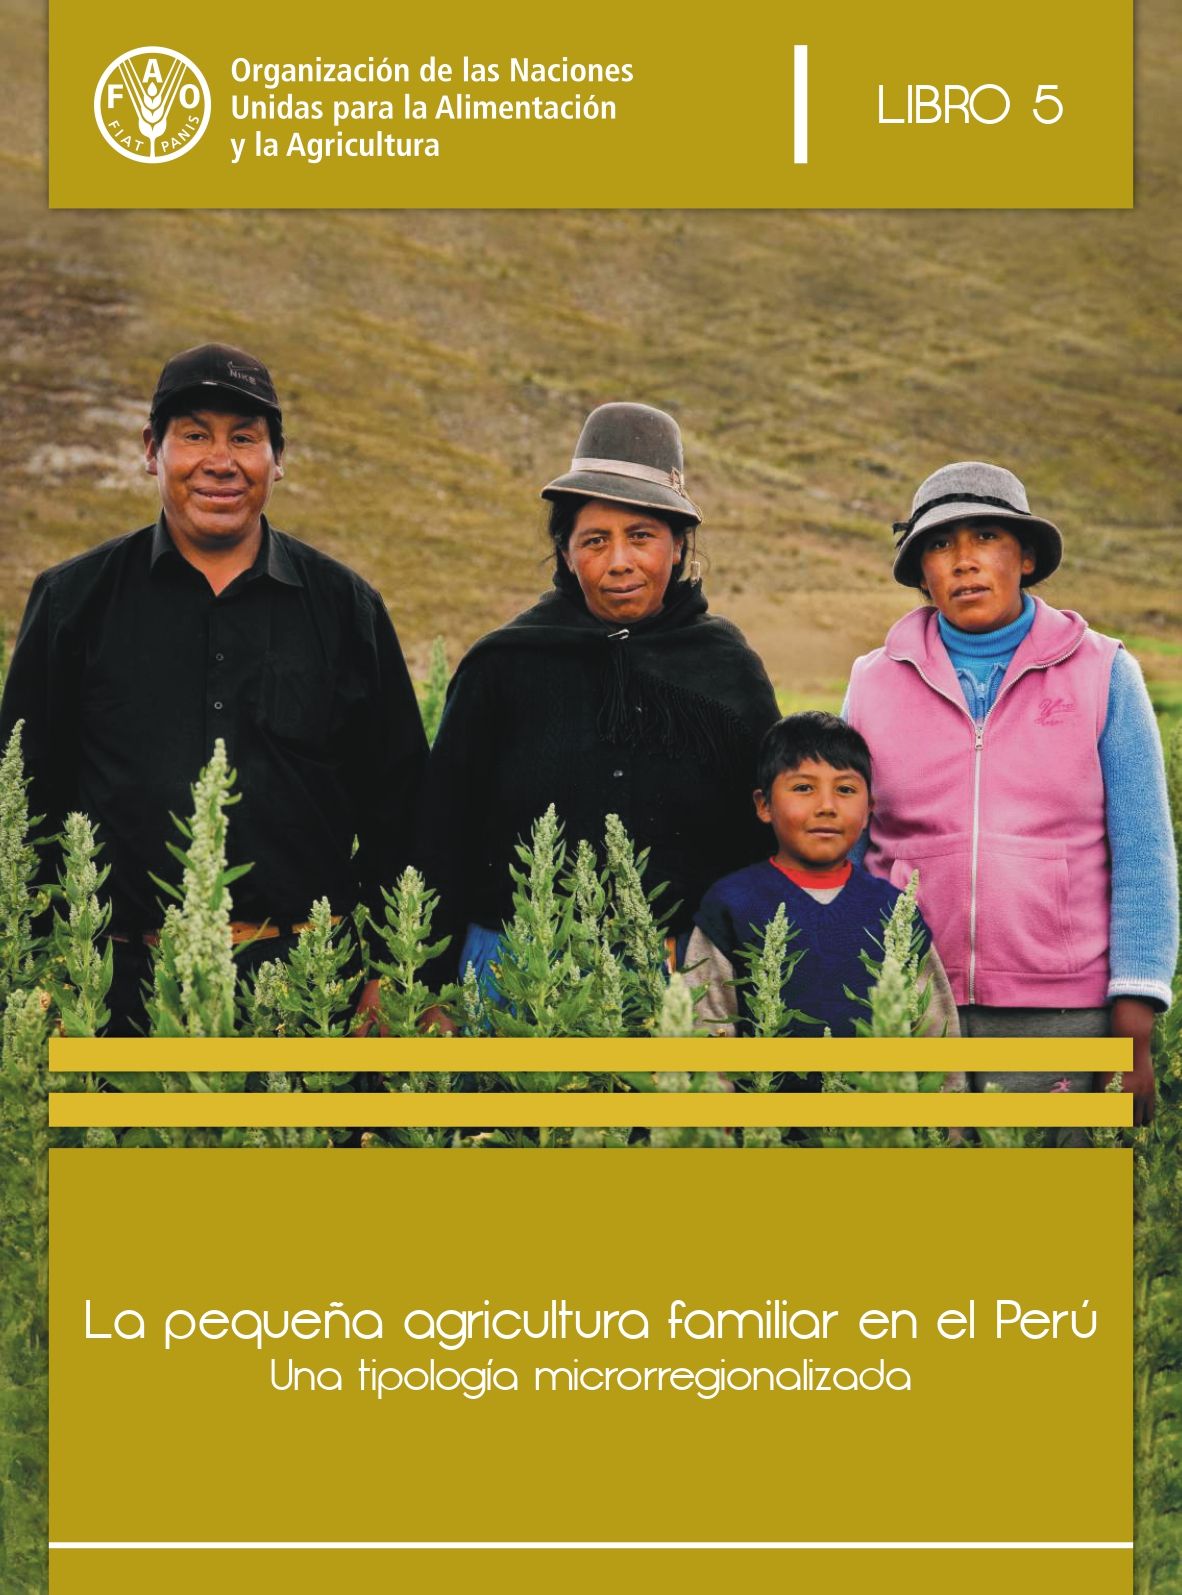 La pequeña agricultura familiar en el Perú. Una tipología microrregionalizada